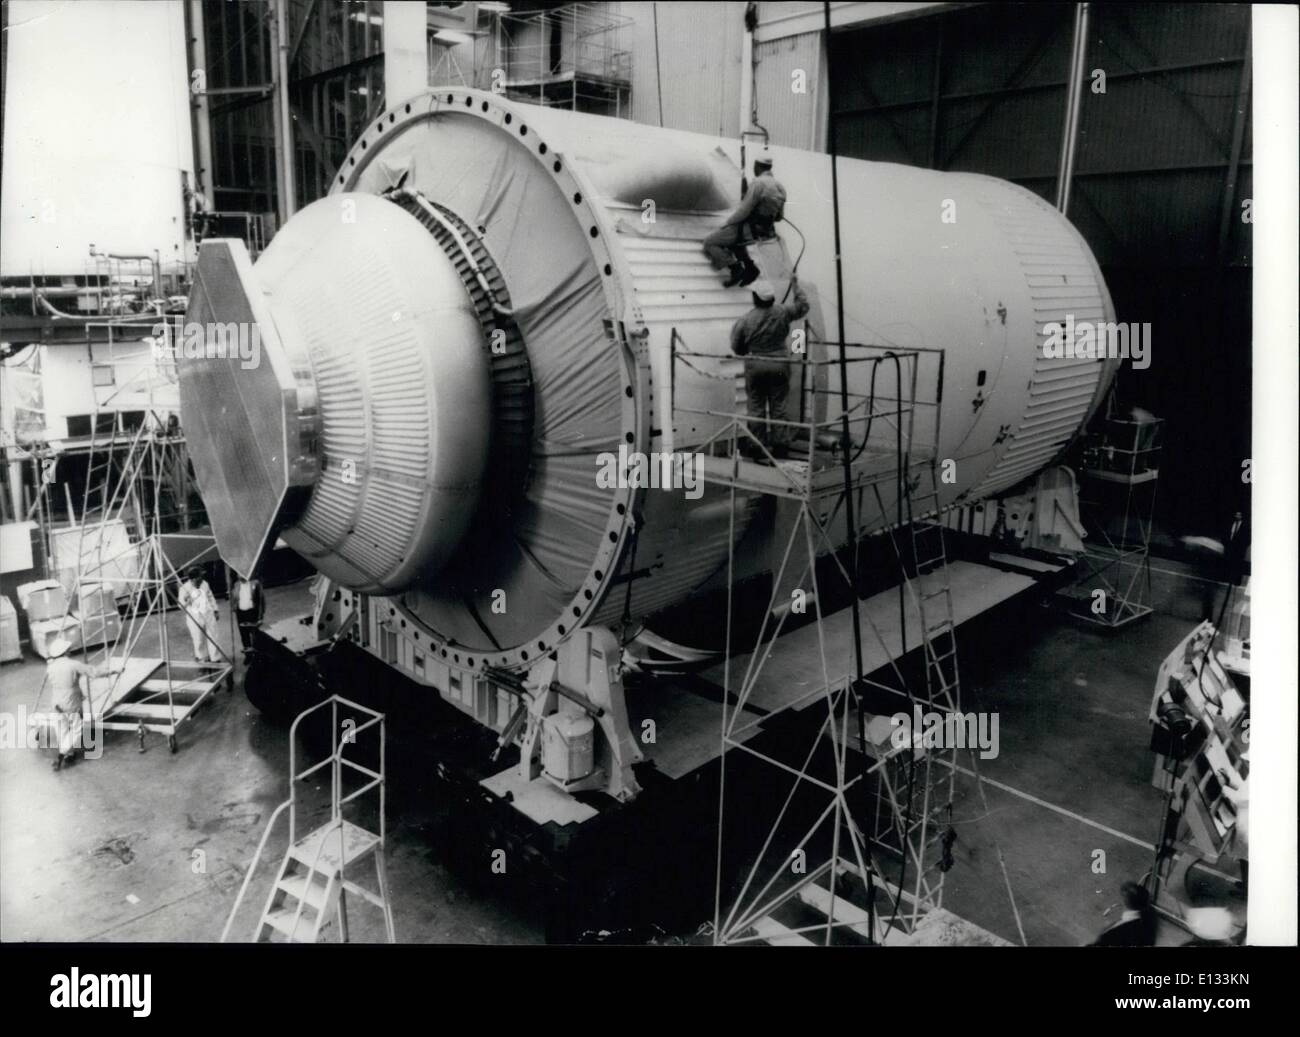 Febbraio 26, 2012 - Skylab prende forma: i tecnici a Huntington Beach, California, preparare una completa versione di questo Skylab. Lo stadio sarà sottoposto a acustico, le vibrazioni e le forze statiche paragonabili a quelli durante la fase di lancio e orbita. Si tratta di una simulazione strutturale di effettiva Skylab workshop nel quale gli equipaggi di astronauti permetterà di vivere e di lavorare per periodi fino a 56 giorni in orbita intorno alla terra. Bottega sotto lo sviluppo a McDonnell Douglas, è prevista per il 1972 il lancio come nazione della prima stazione spaziale. Fase di prova è di 50 piedi di lunghezza, 21.7 metri di diametro e pesa 27 1/2 tonnellate. Foto Stock